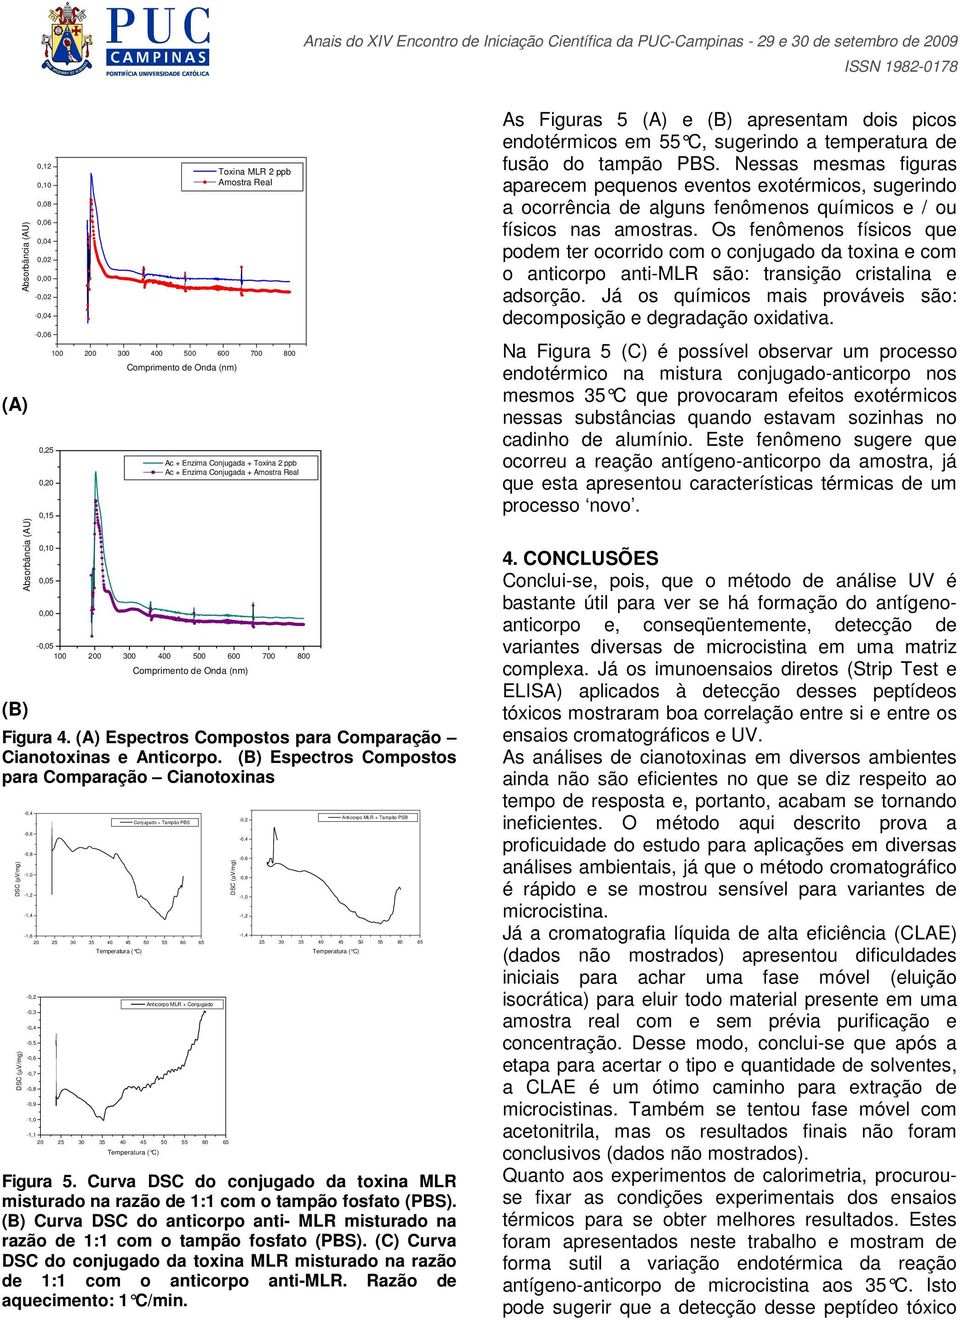 Espectros Compostos para Comparação Cianotoxinas -1,2-1,4-1,6-0,2-0,3-0,5-0,7-0,9-1,1 20 25 30 35 40 45 50 55 60 65 Conjugado + Tampão PBS 20 25 30 35 40 45 50 55 60 65 Anticorpo MLR + Conjugado